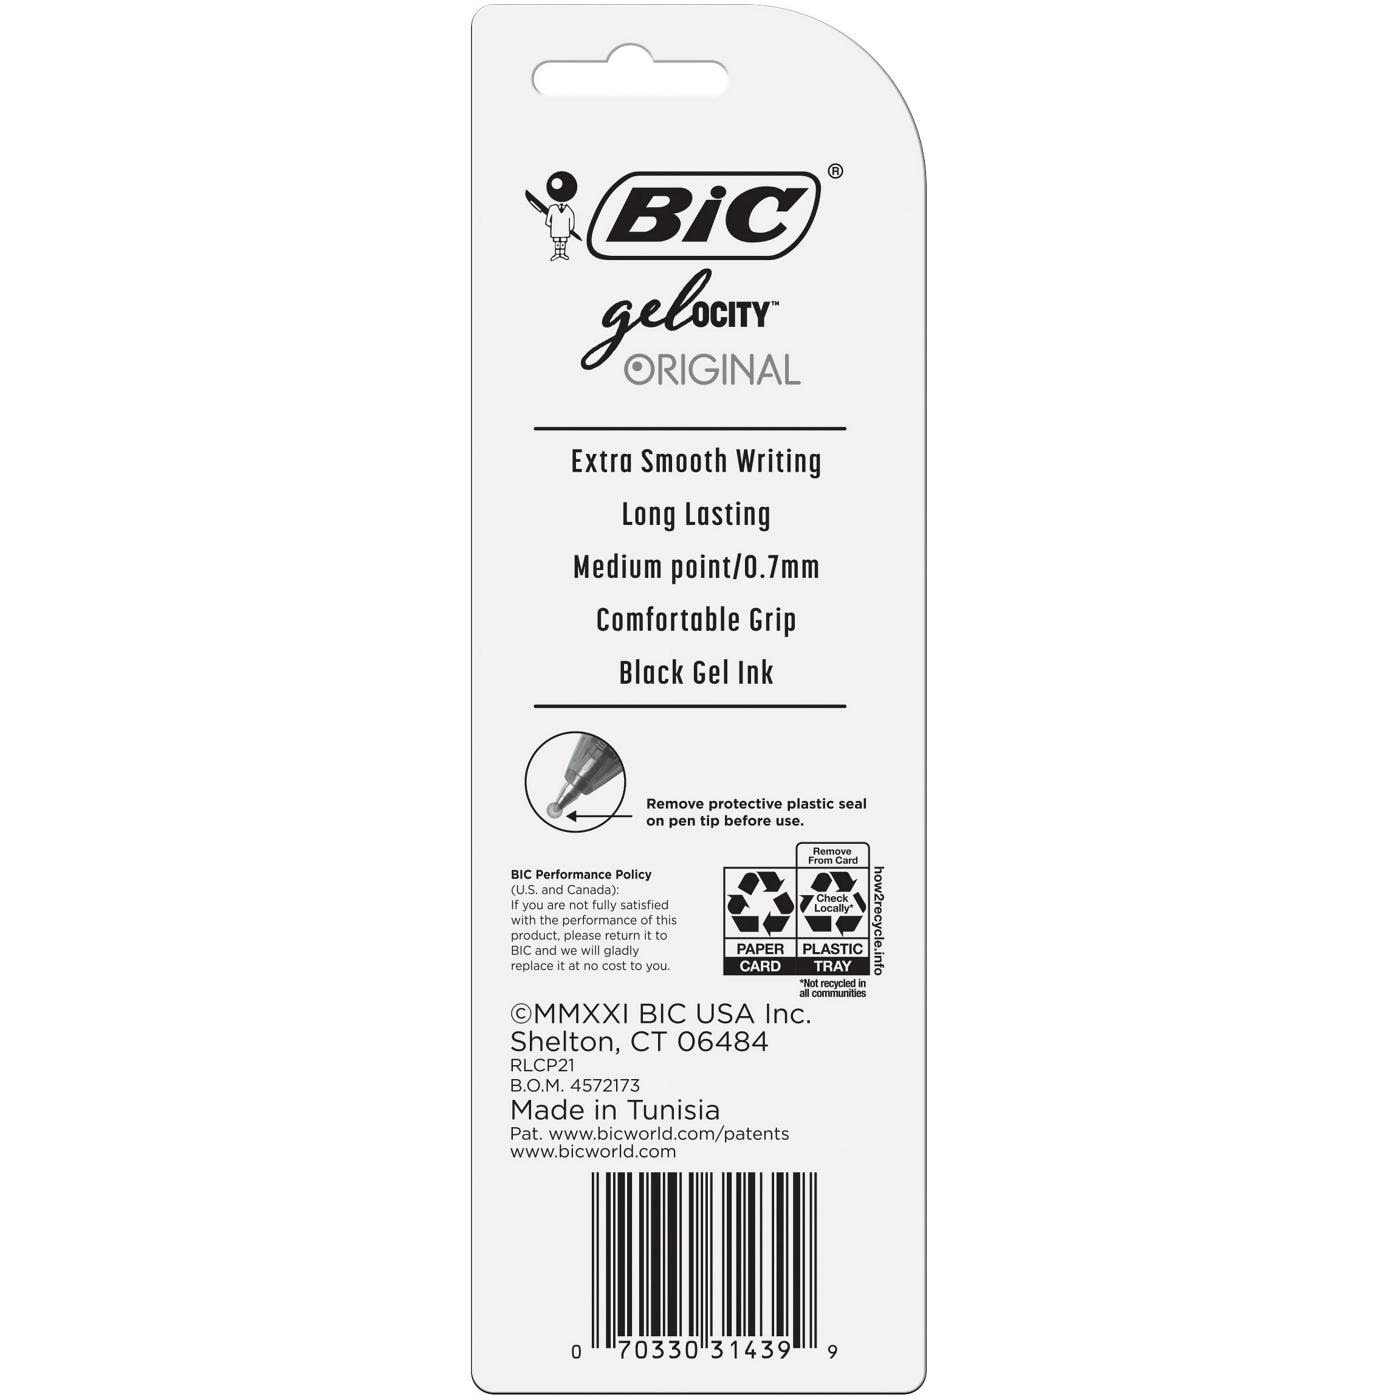 BIC Gel-ocity Original 0.7mm Gel Pens - Black Ink; image 2 of 2